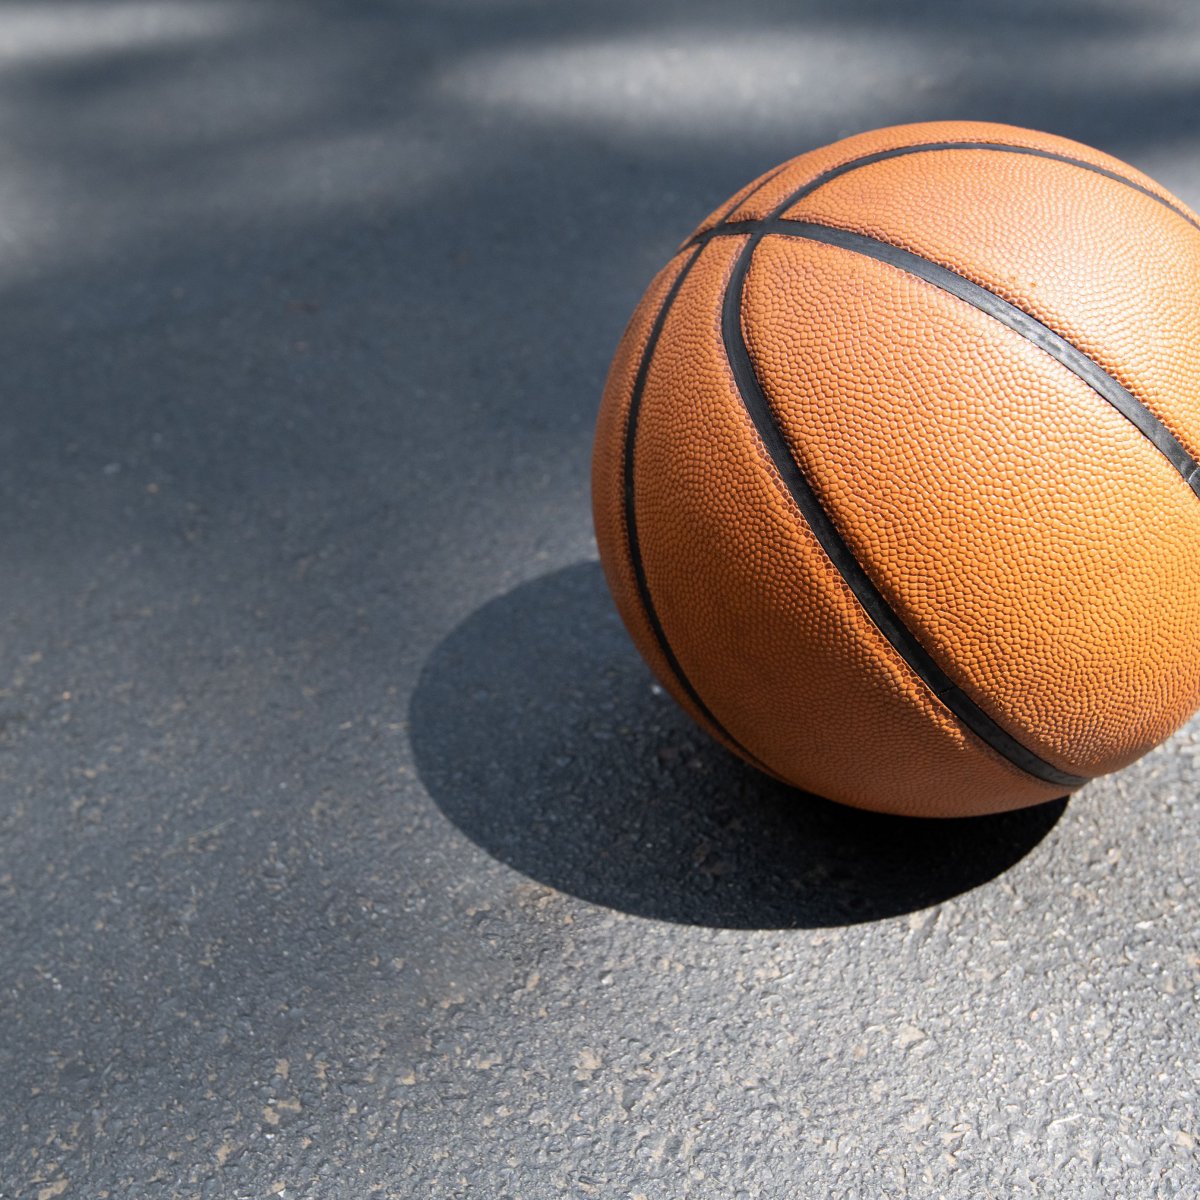 Баскетбольный мяч фон